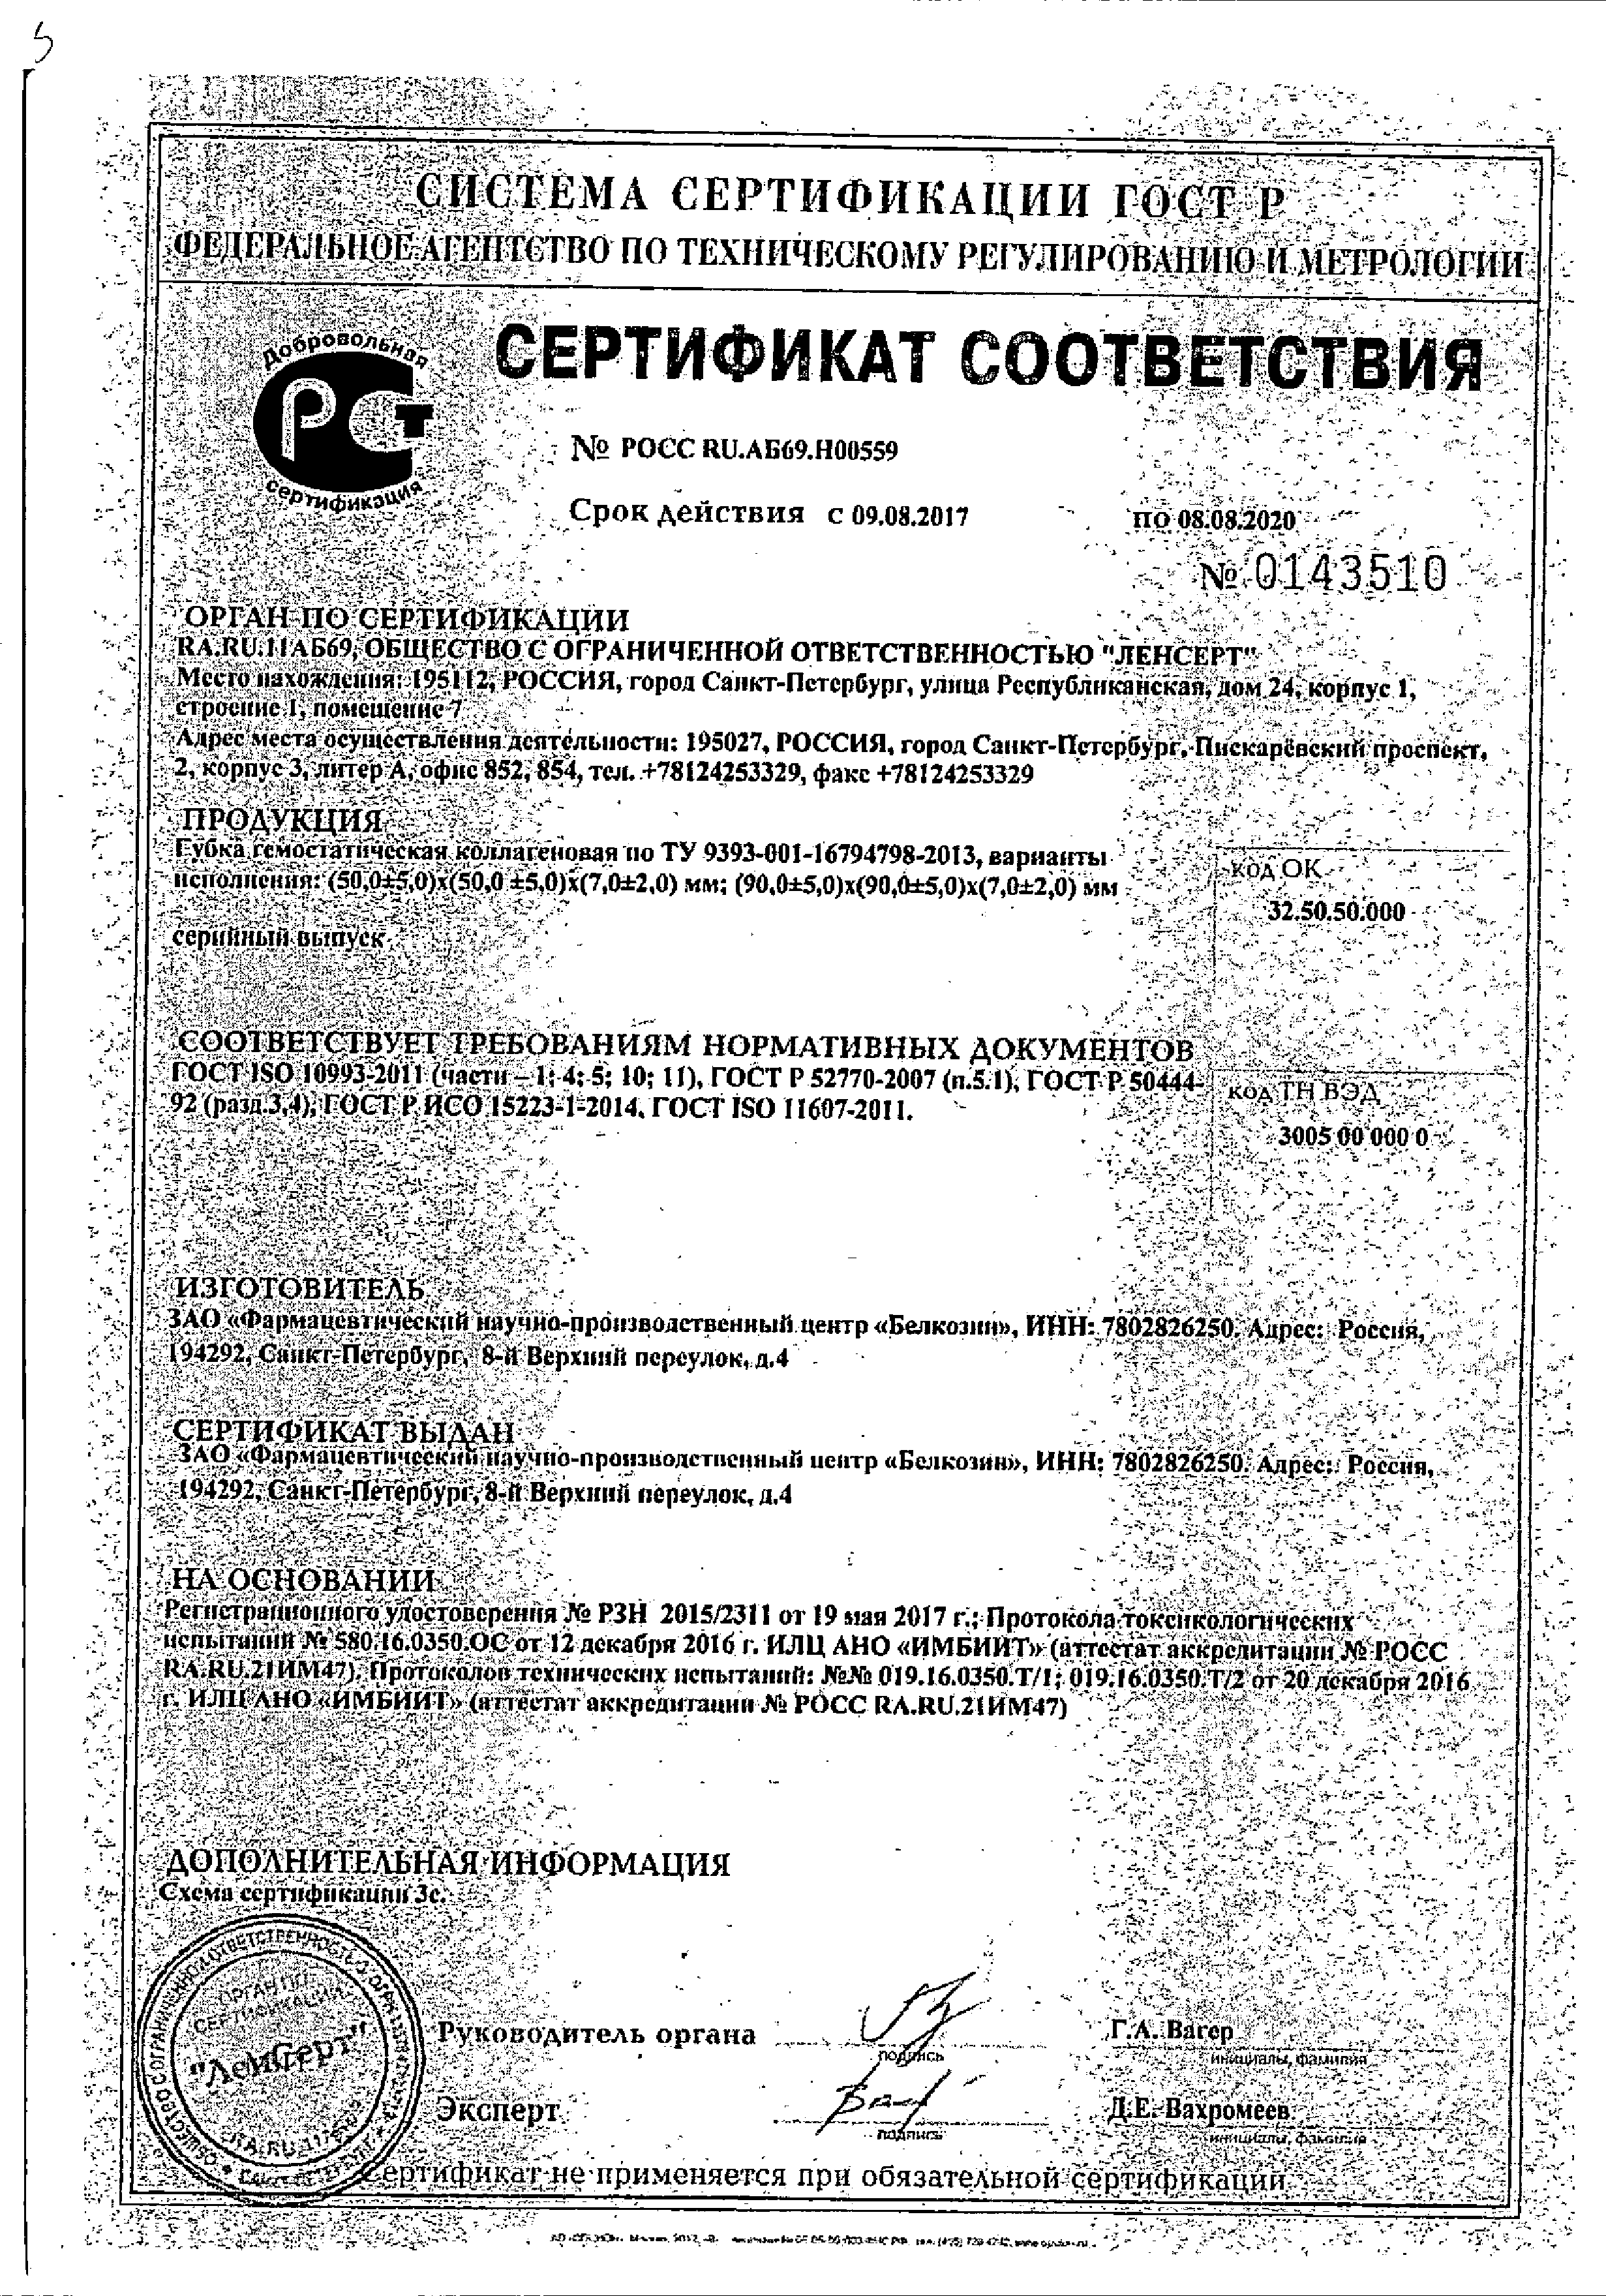 Губка гемостатическая коллагеновая сертификат